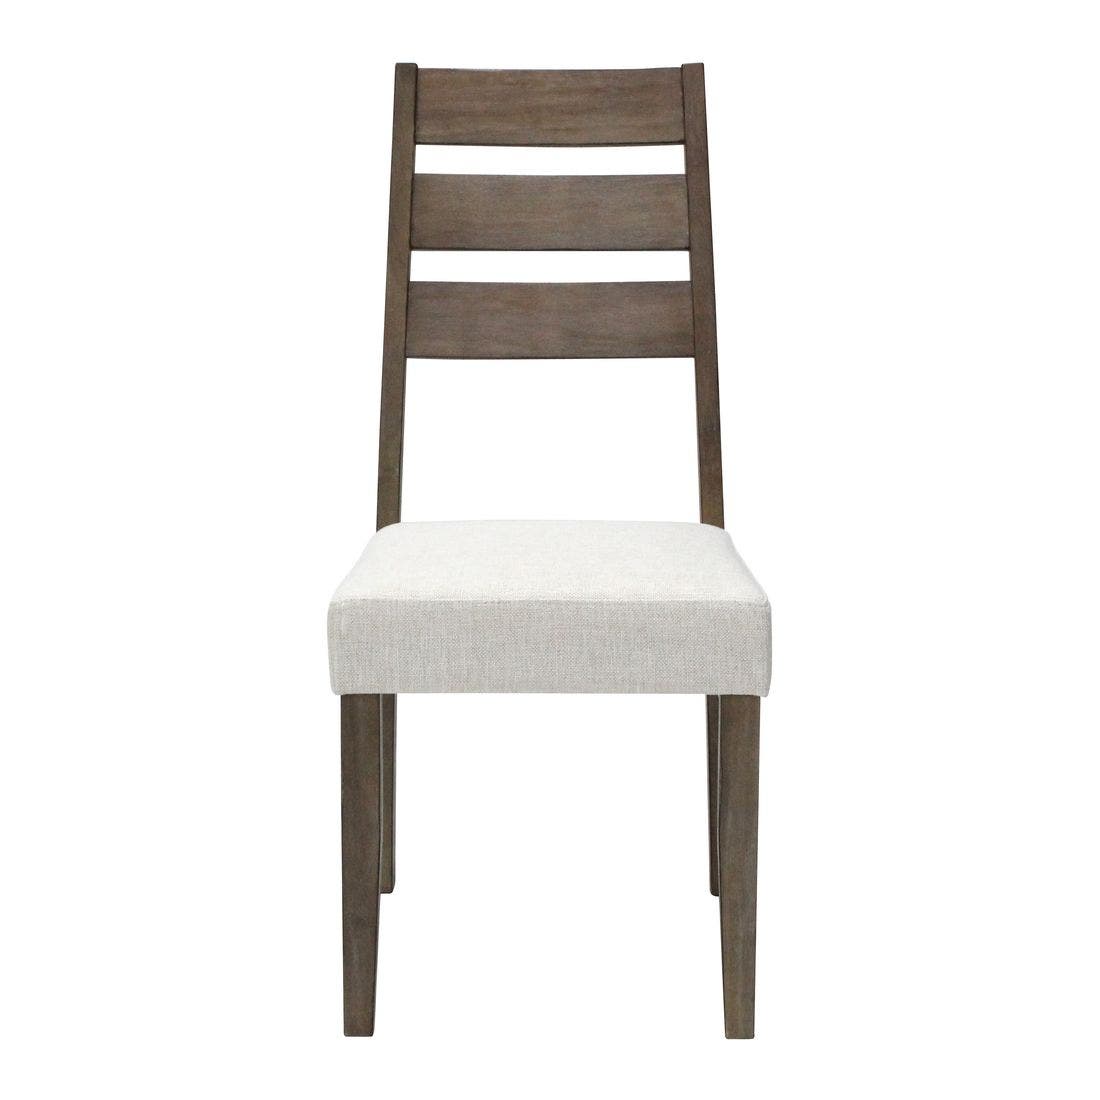 เก้าอี้ทานอาหาร เก้าอี้ไม้เบาะผ้า รุ่น Sanako-SB Design Square